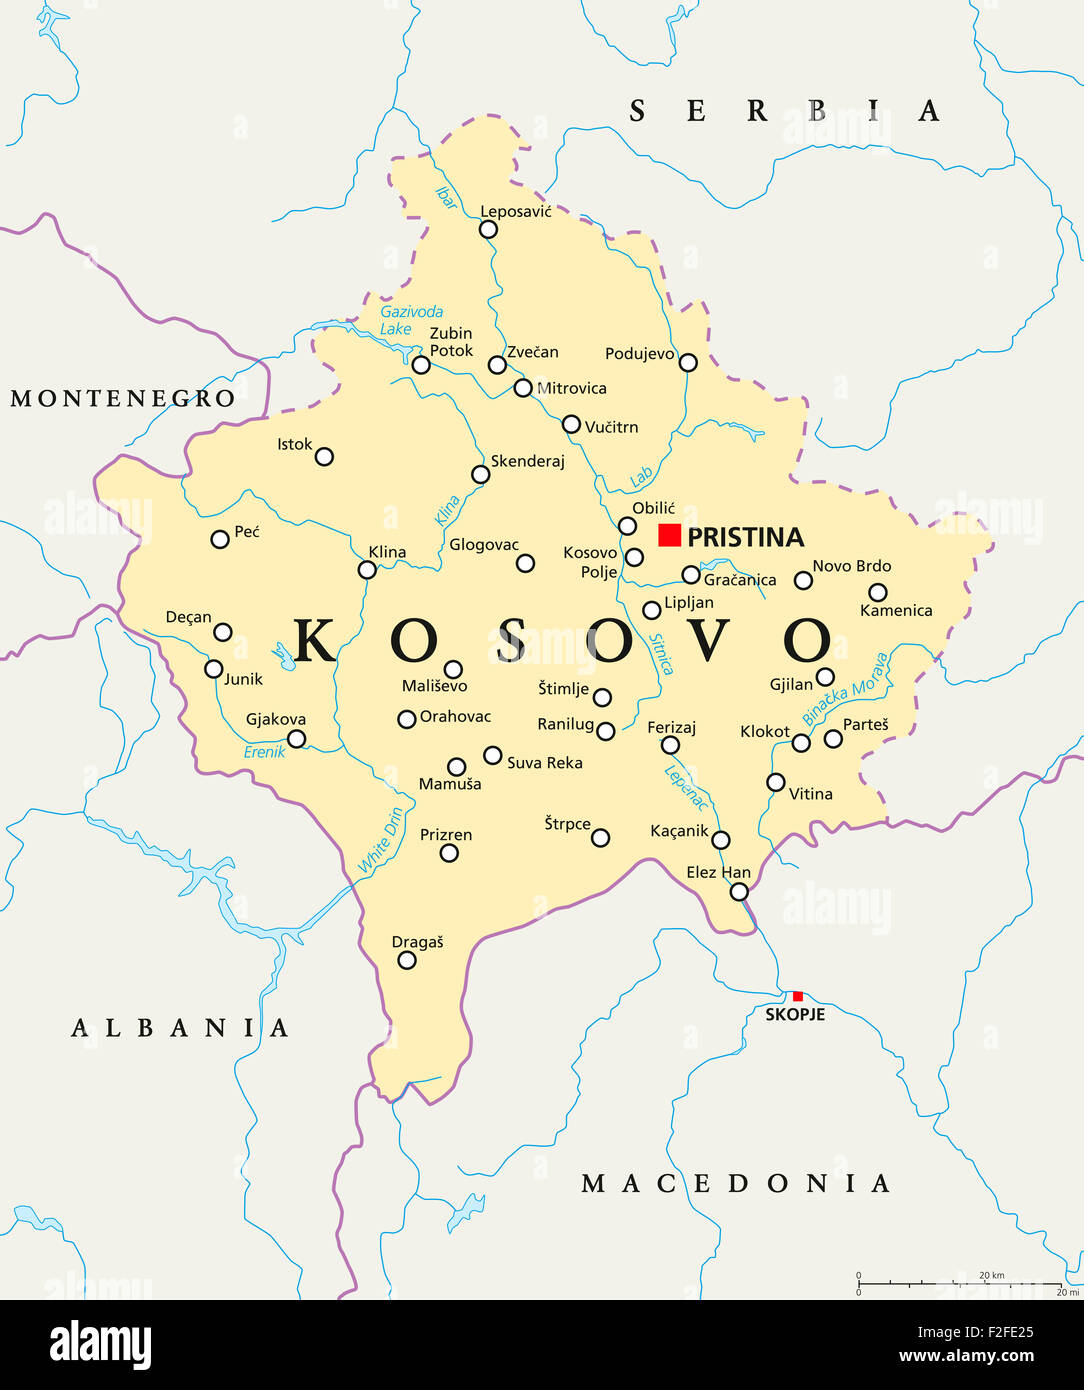 mapa-politico-de-kosovo-con-la-capital-pristina-las-fronteras-nacionales-importantes-ciudades-rios-y-lagos-rotulos-en-ingles-y-escalado-f2fe25.jpg